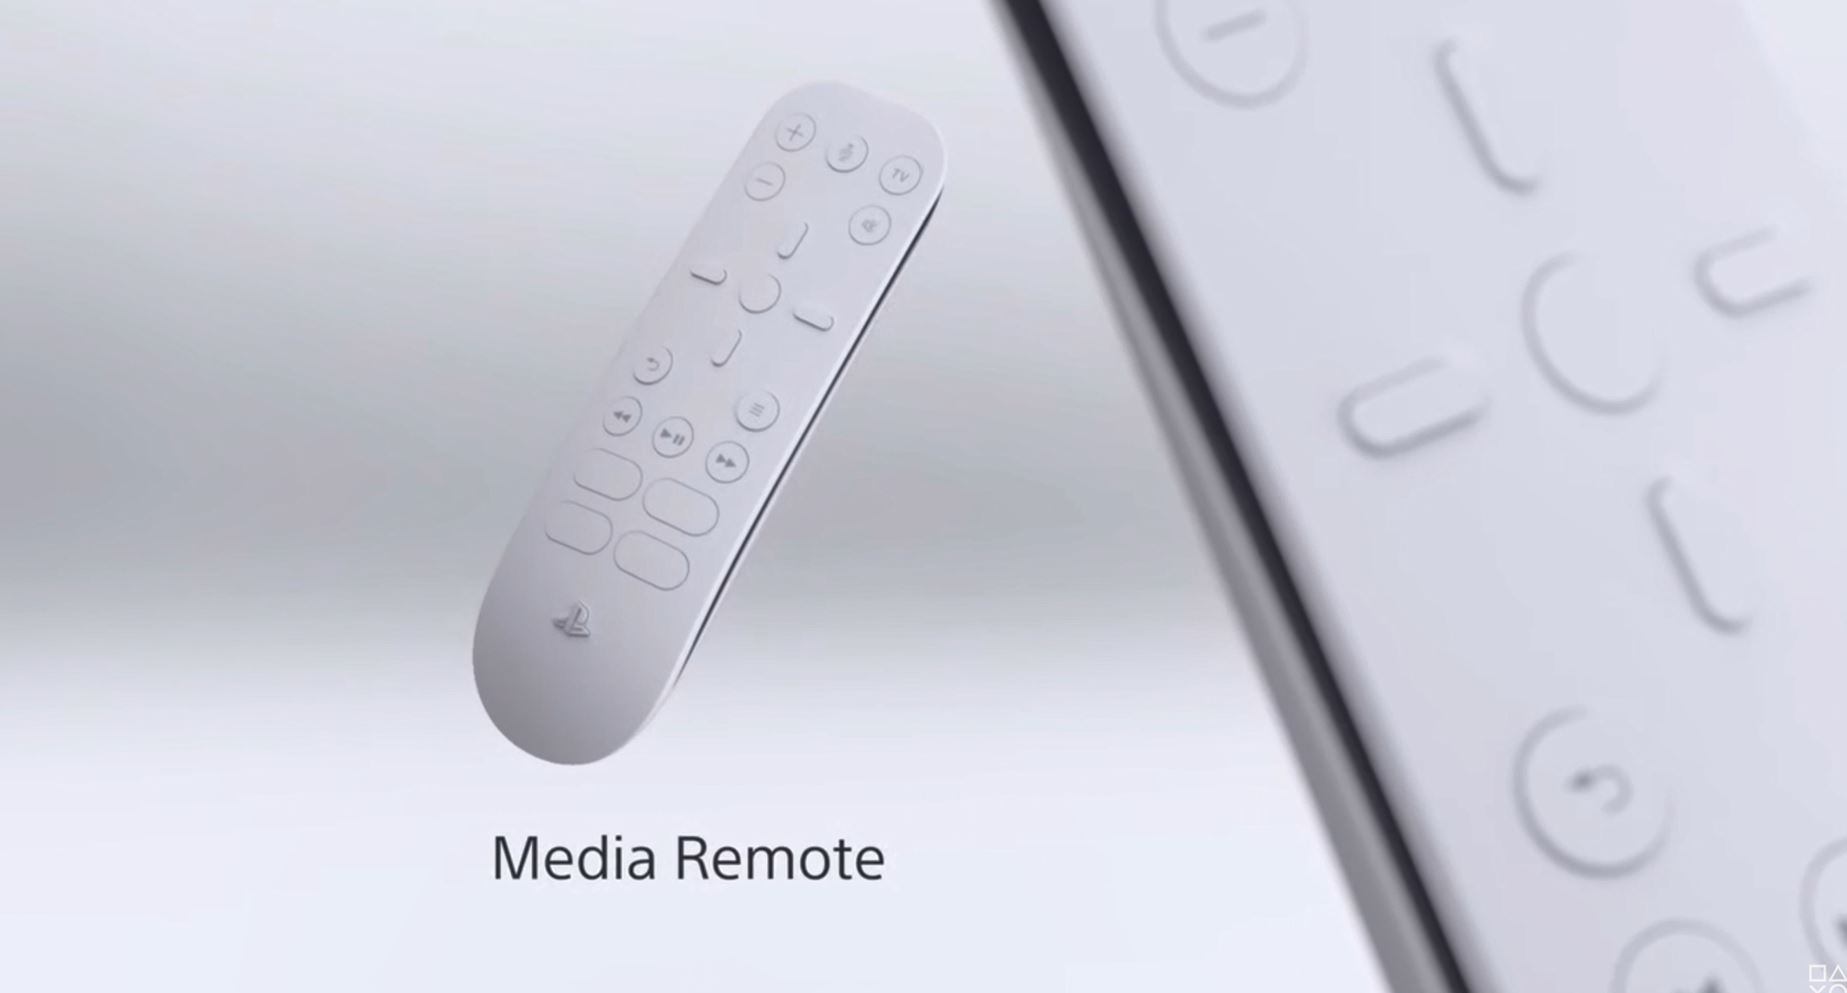 ps5 media remote